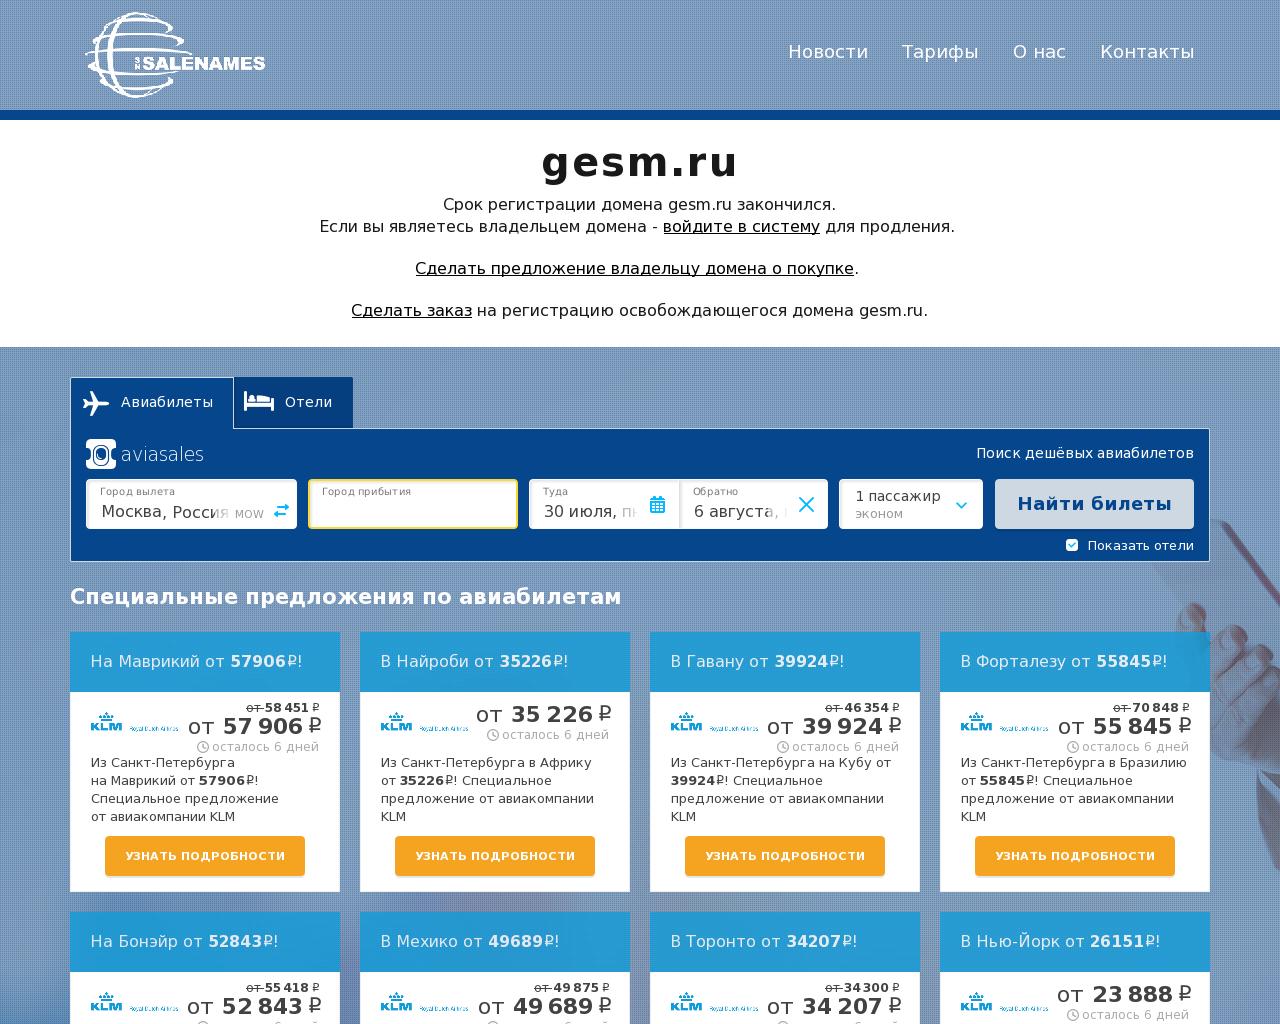 Изображение сайта gesm.ru в разрешении 1280x1024